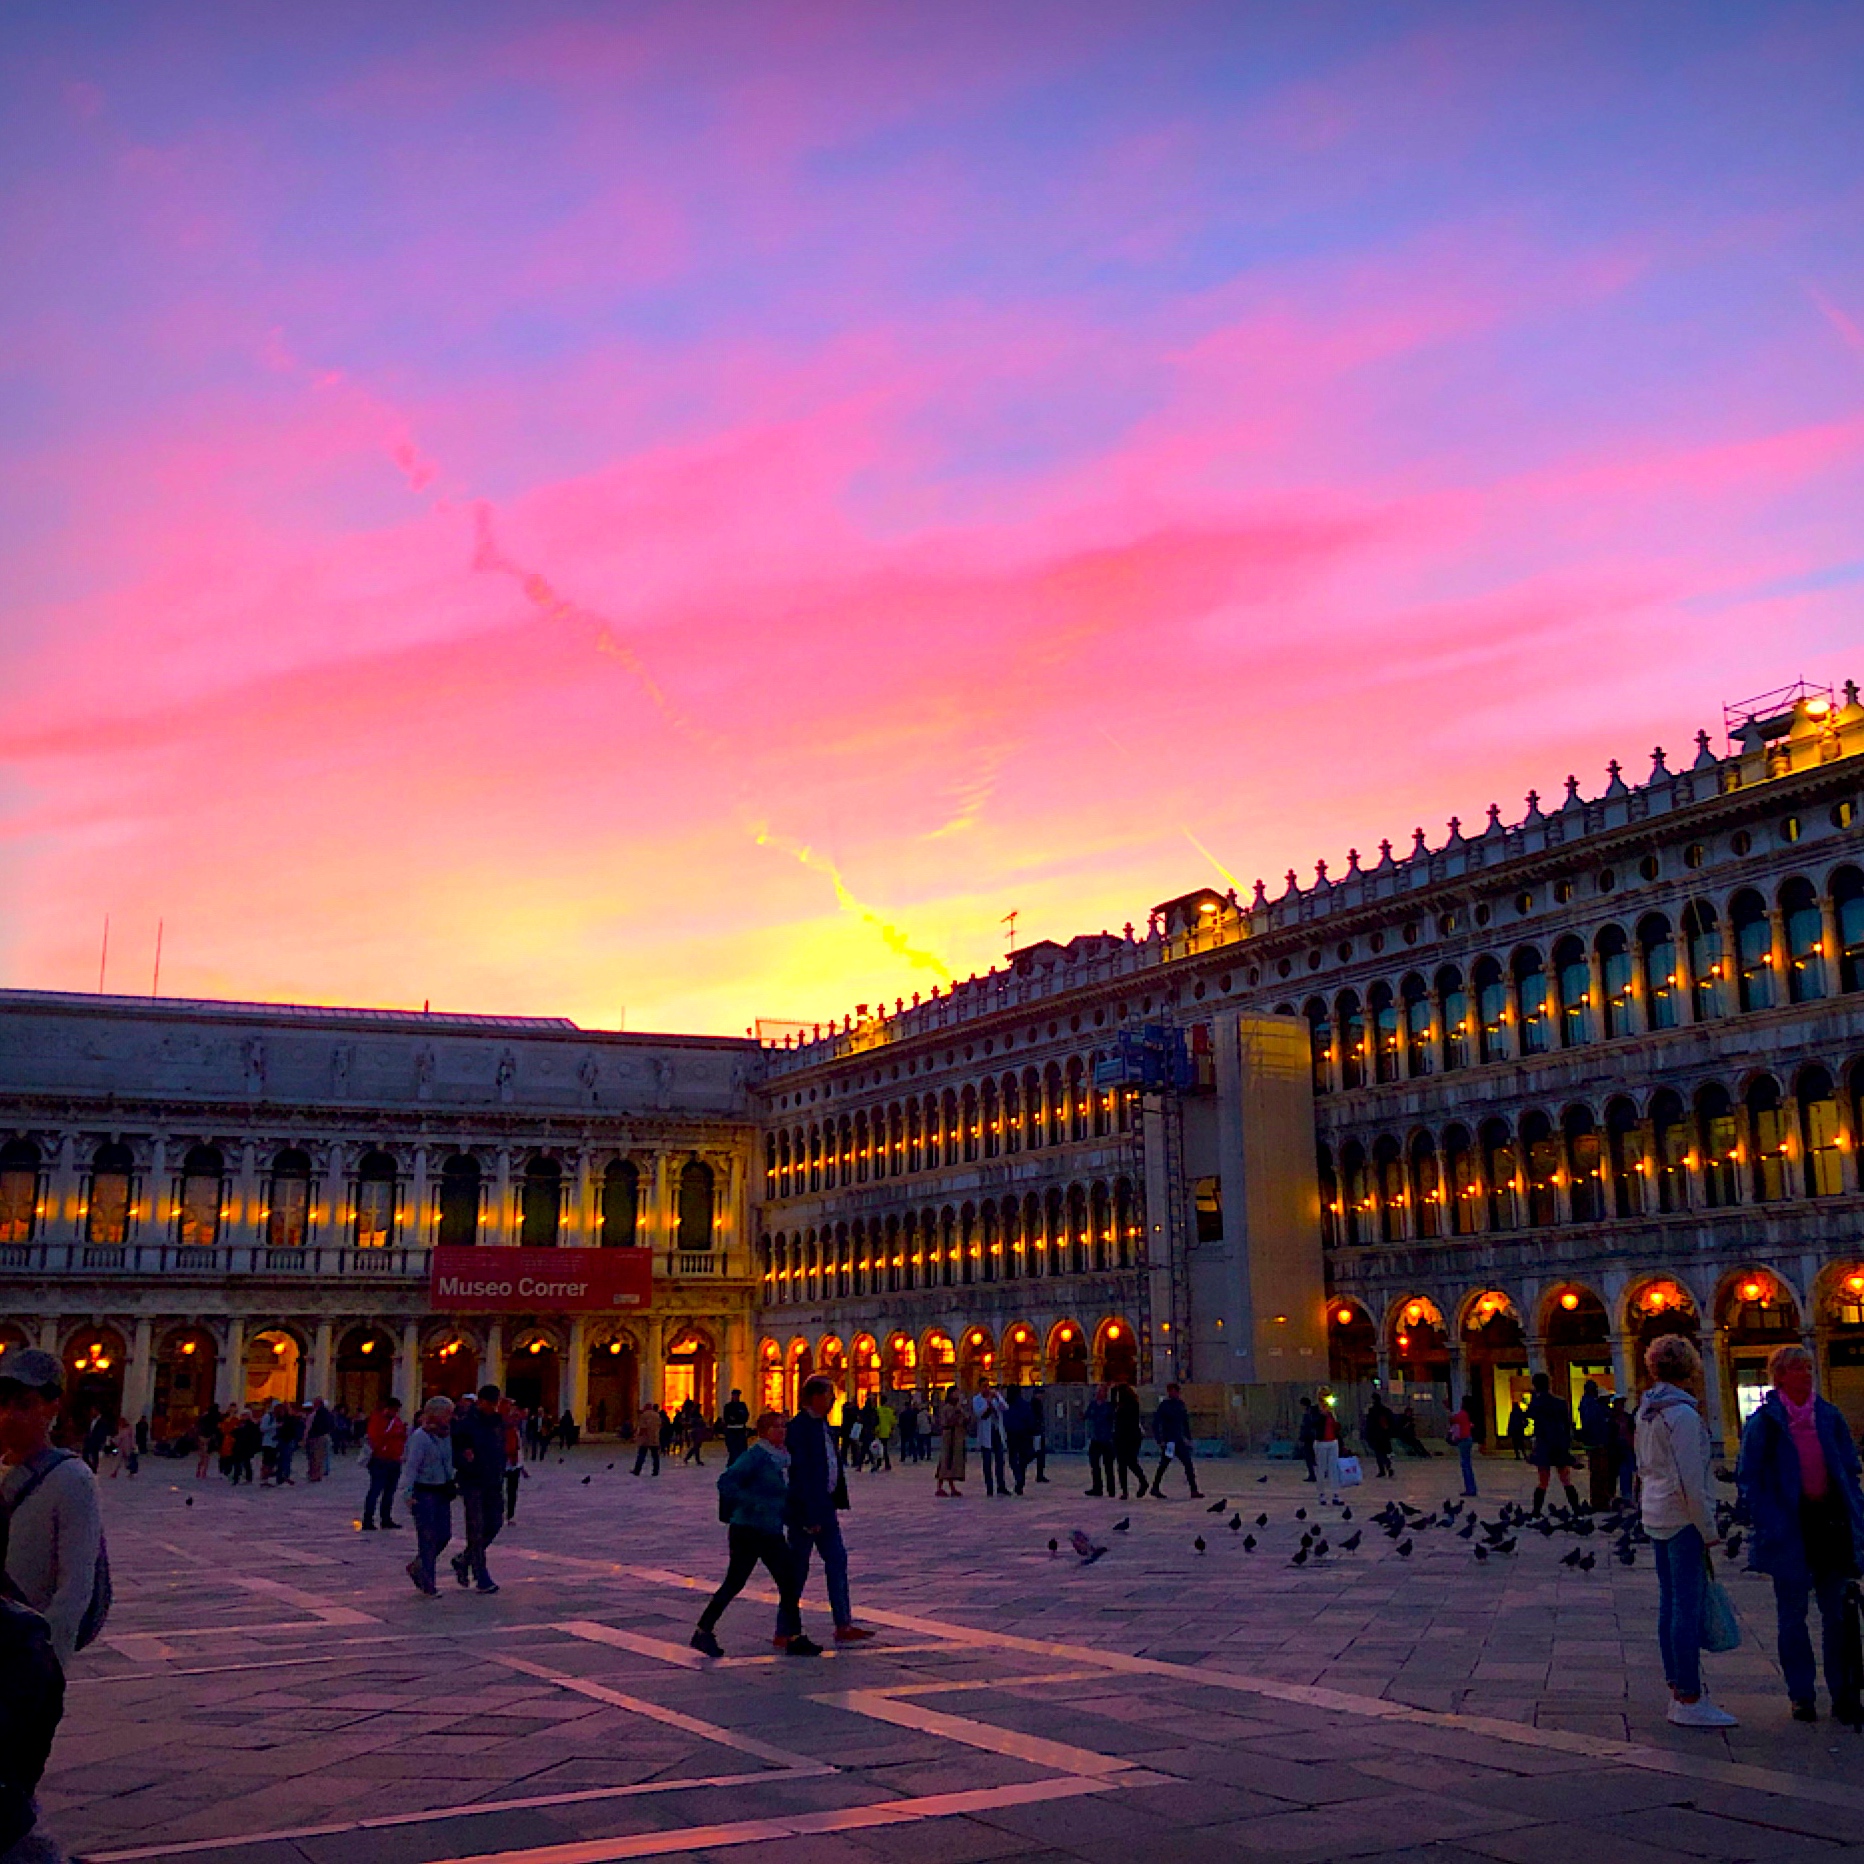 Tvアニメ アルテ 公式 アルテ 公式instagram出張版 アルテのもう一つの舞台 ヴェネツィア その中でも世界で一番美しい広場と名高い サンマルコ広場 は一度は訪れてみたい場所ですね 日中はもちろん 夕暮れ時や夜景も魅力的 ぜひほかの